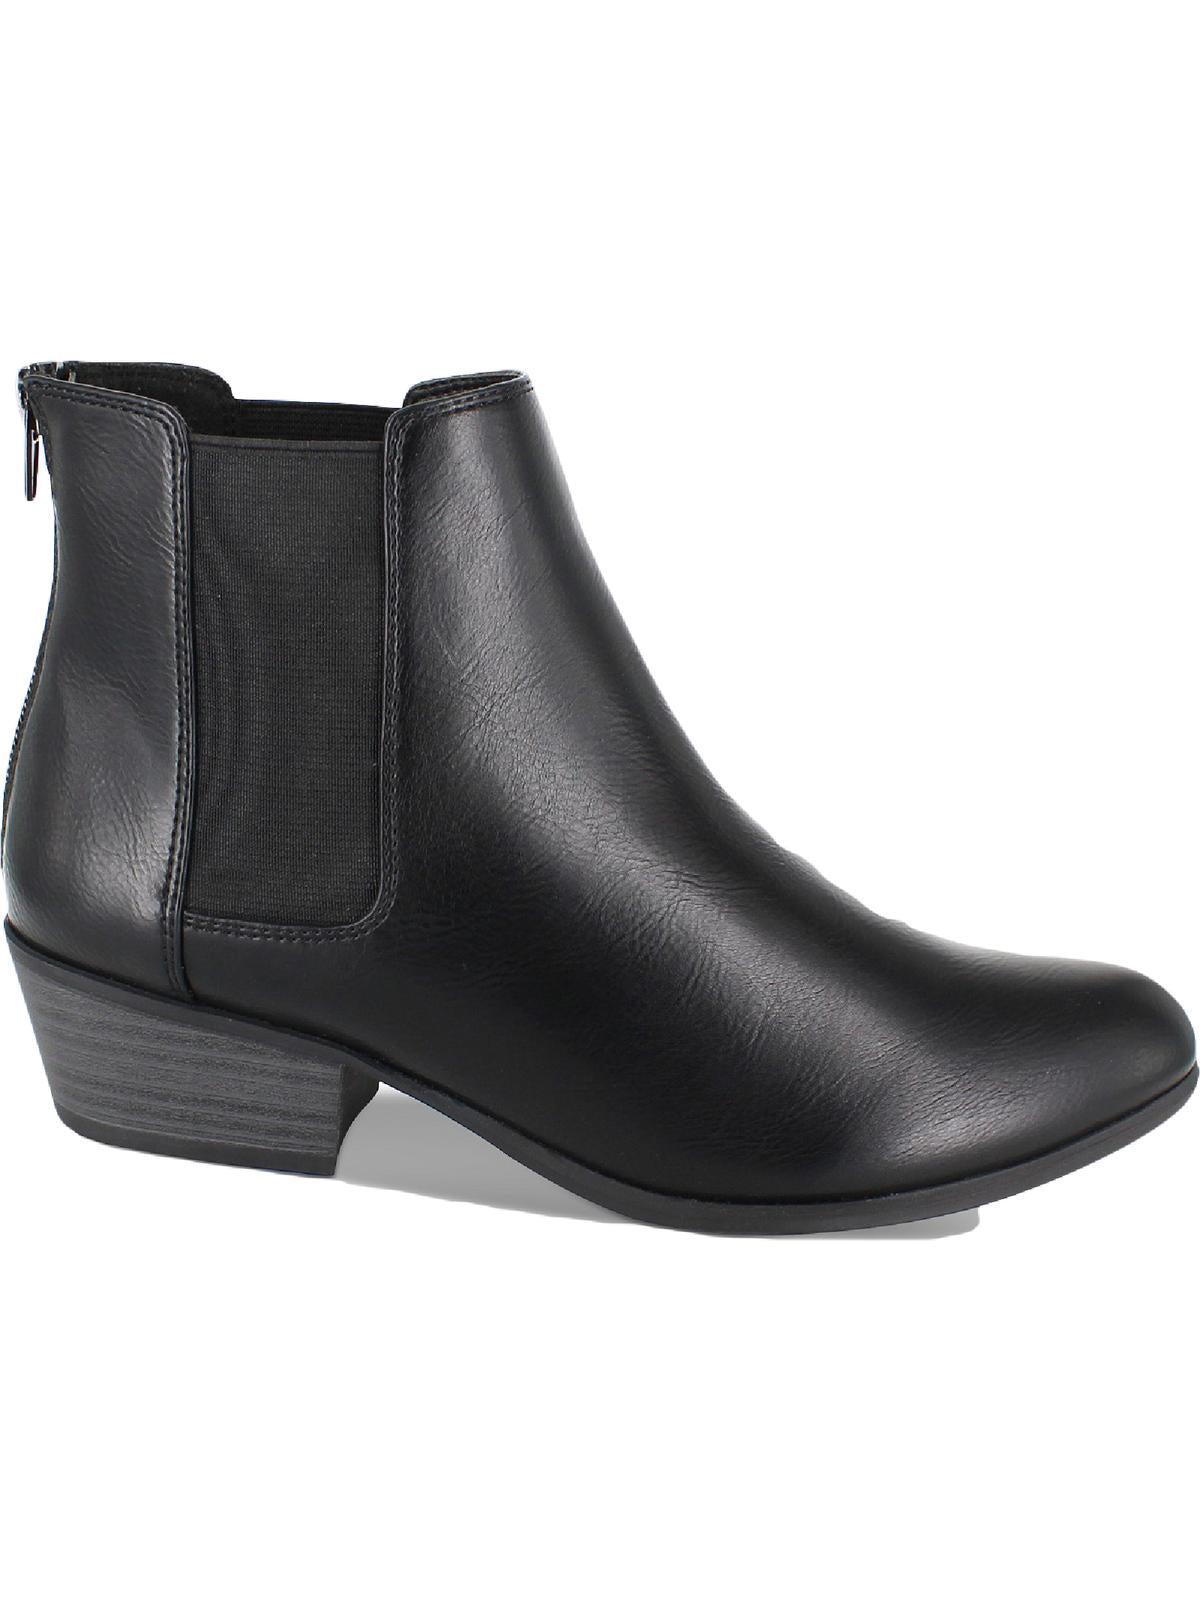 Esprit Tylee Dressy Block Heel Booties in Black | Lyst